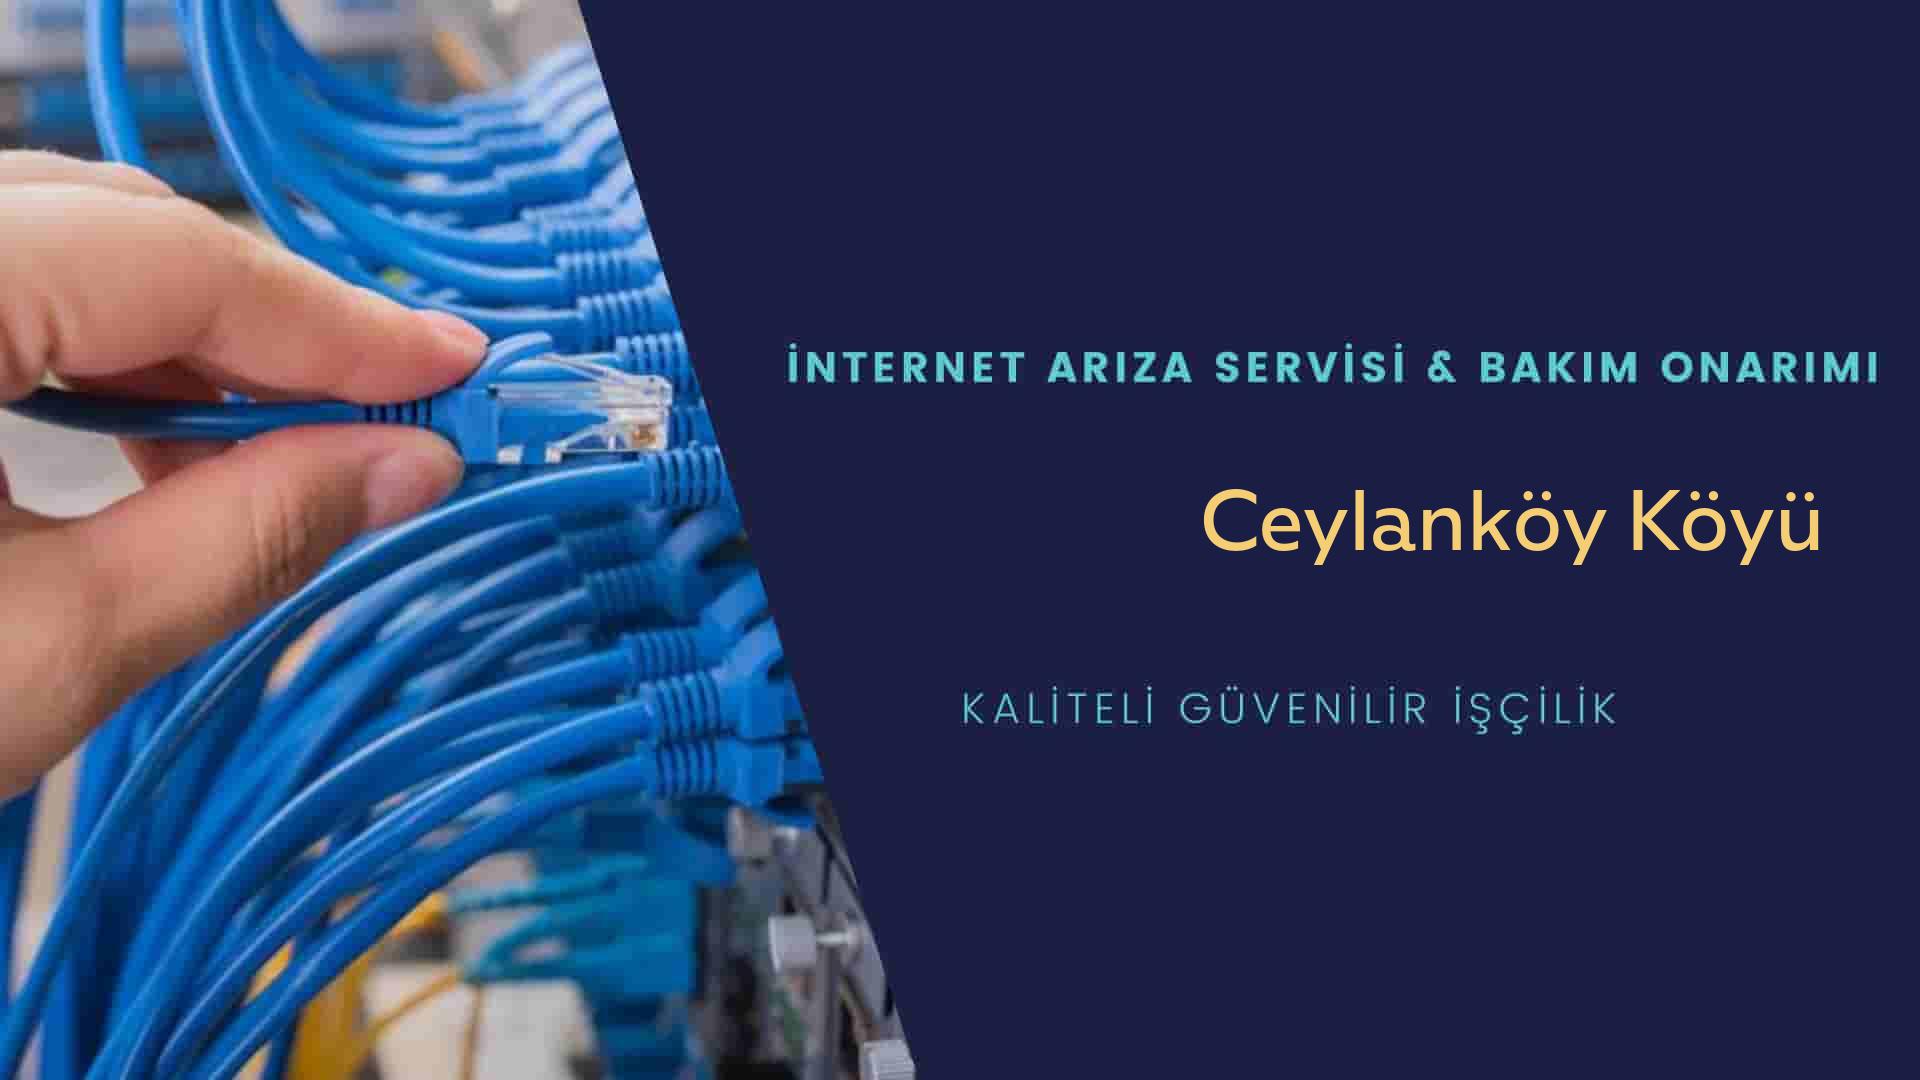 Ceylanköy Köyü internet kablosu çekimi yapan yerler veya elektrikçiler mi? arıyorsunuz doğru yerdesiniz o zaman sizlere 7/24 yardımcı olacak profesyonel ustalarımız bir telefon kadar yakındır size.